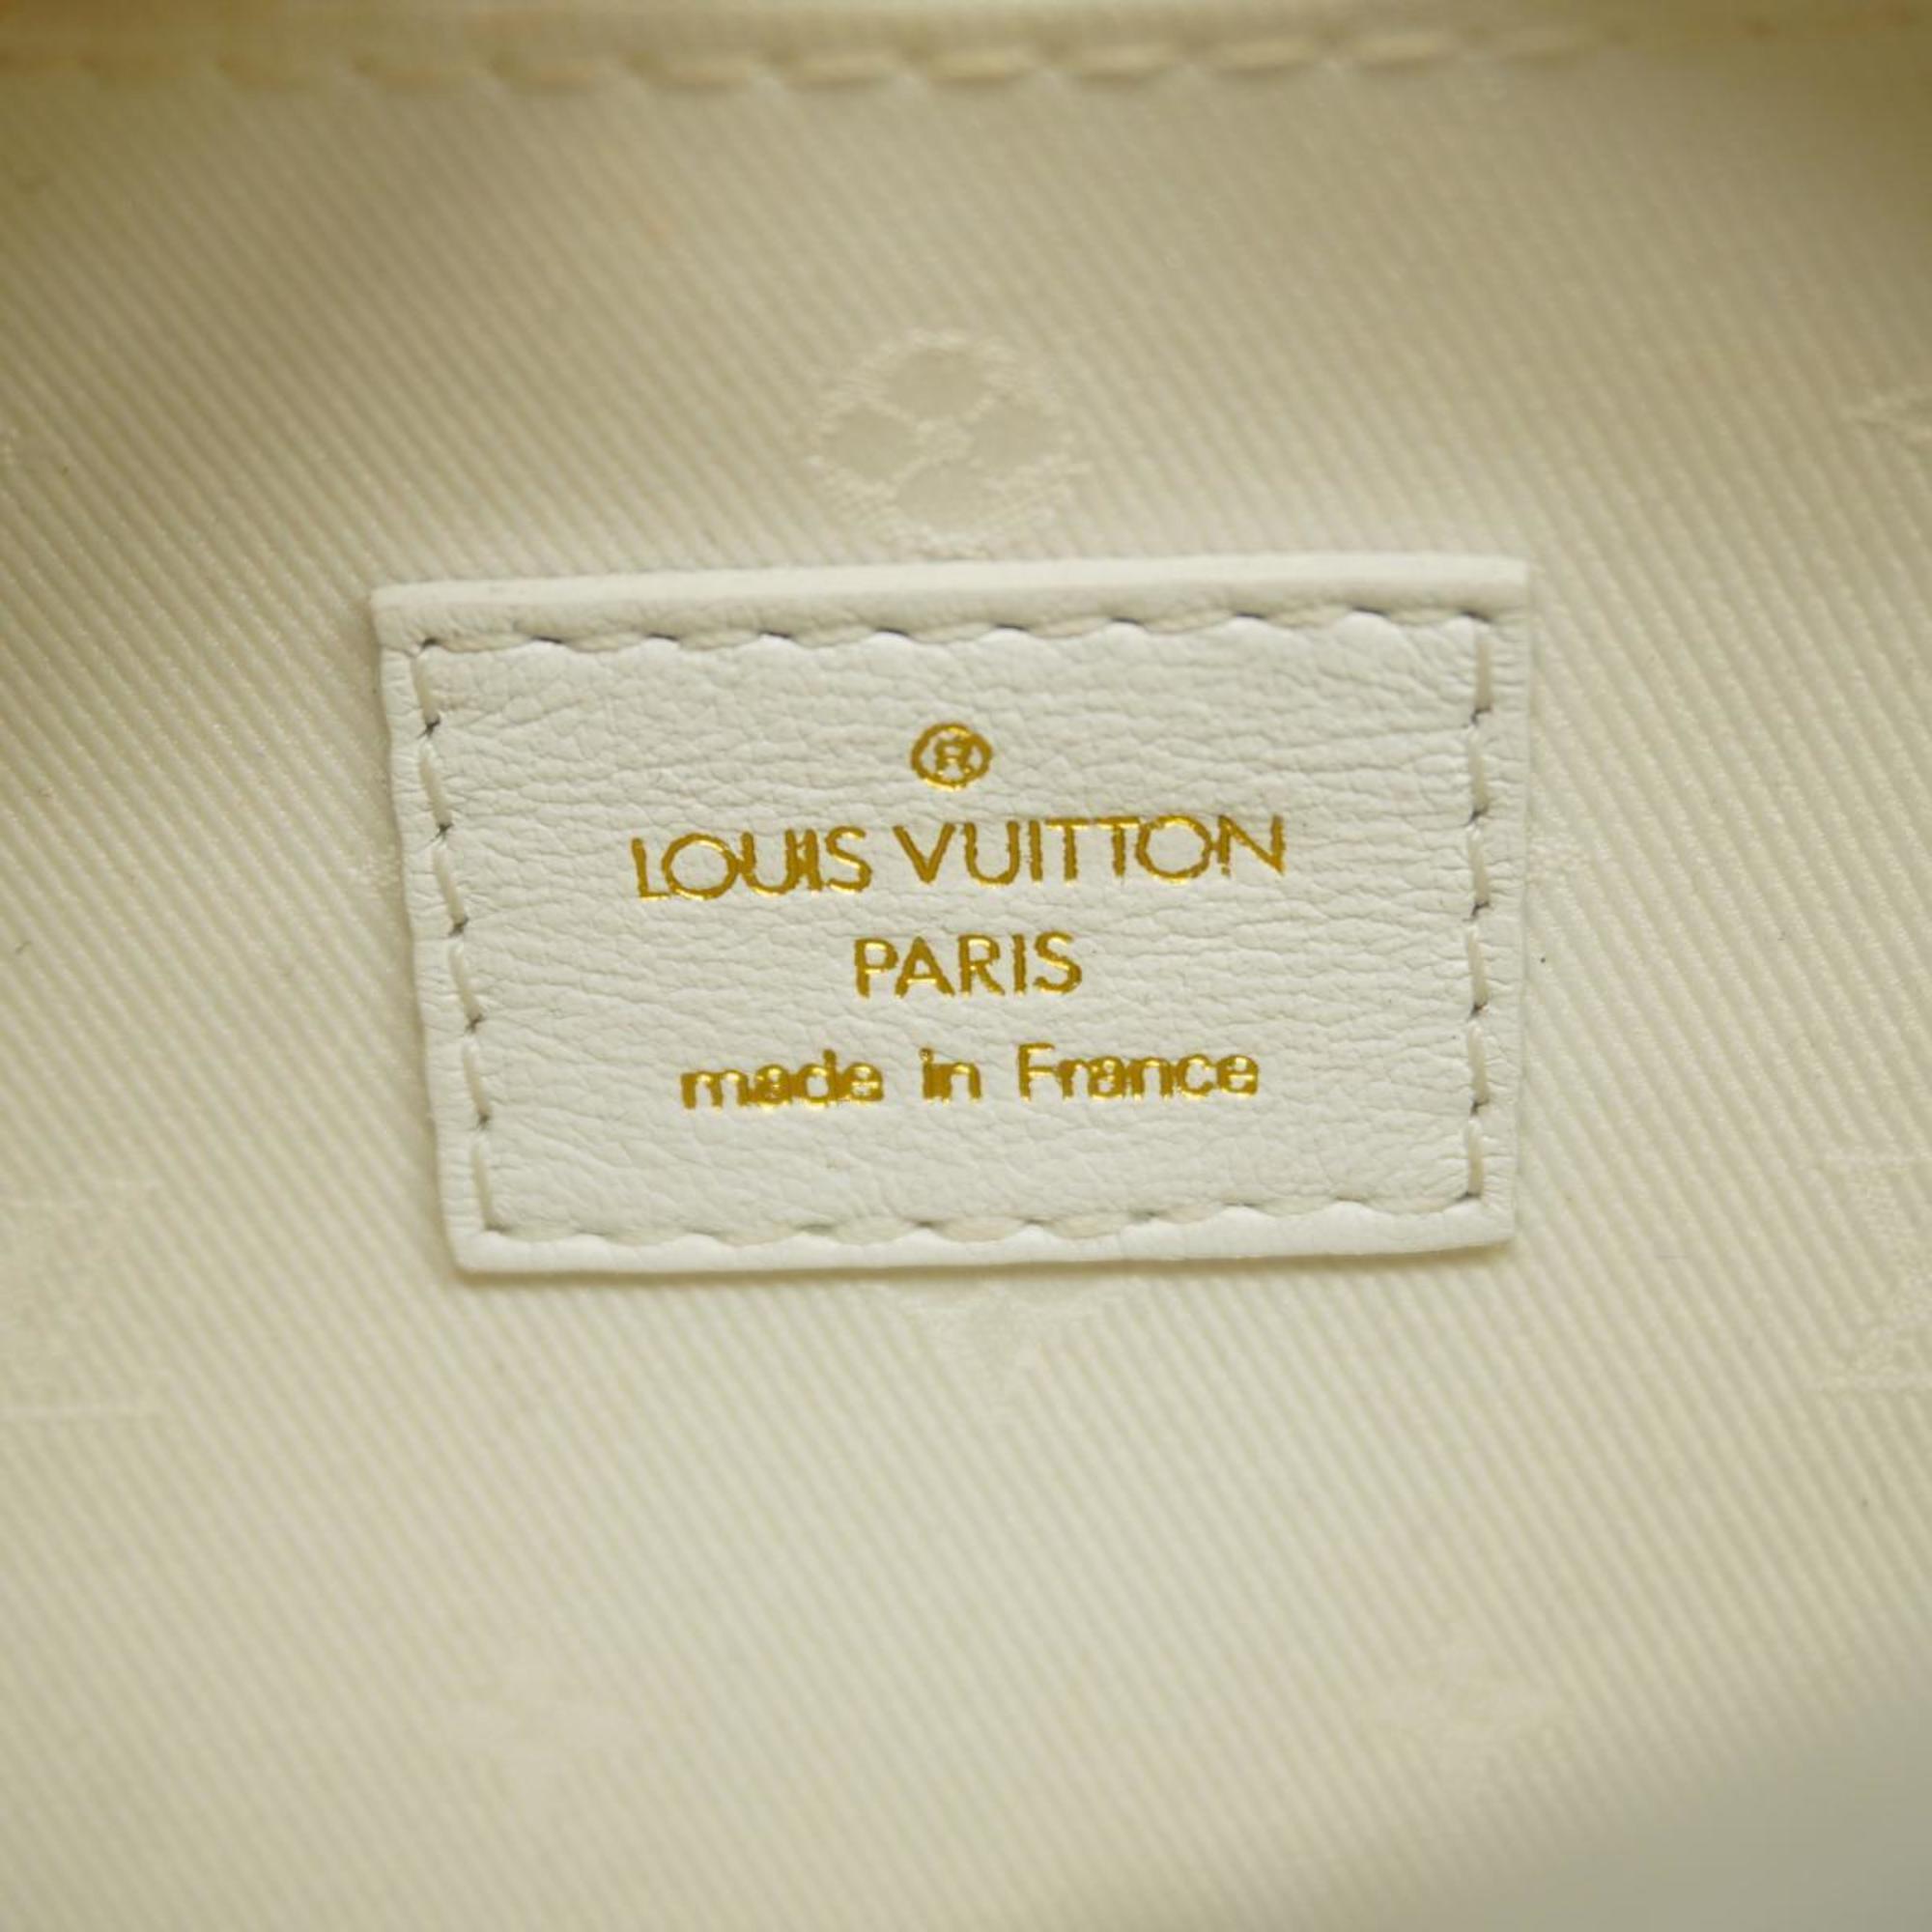 ルイ・ヴィトン(Louis Vuitton) ルイ・ヴィトン ハンドバッグ オーバーザムーン M59959 ホワイトレディース